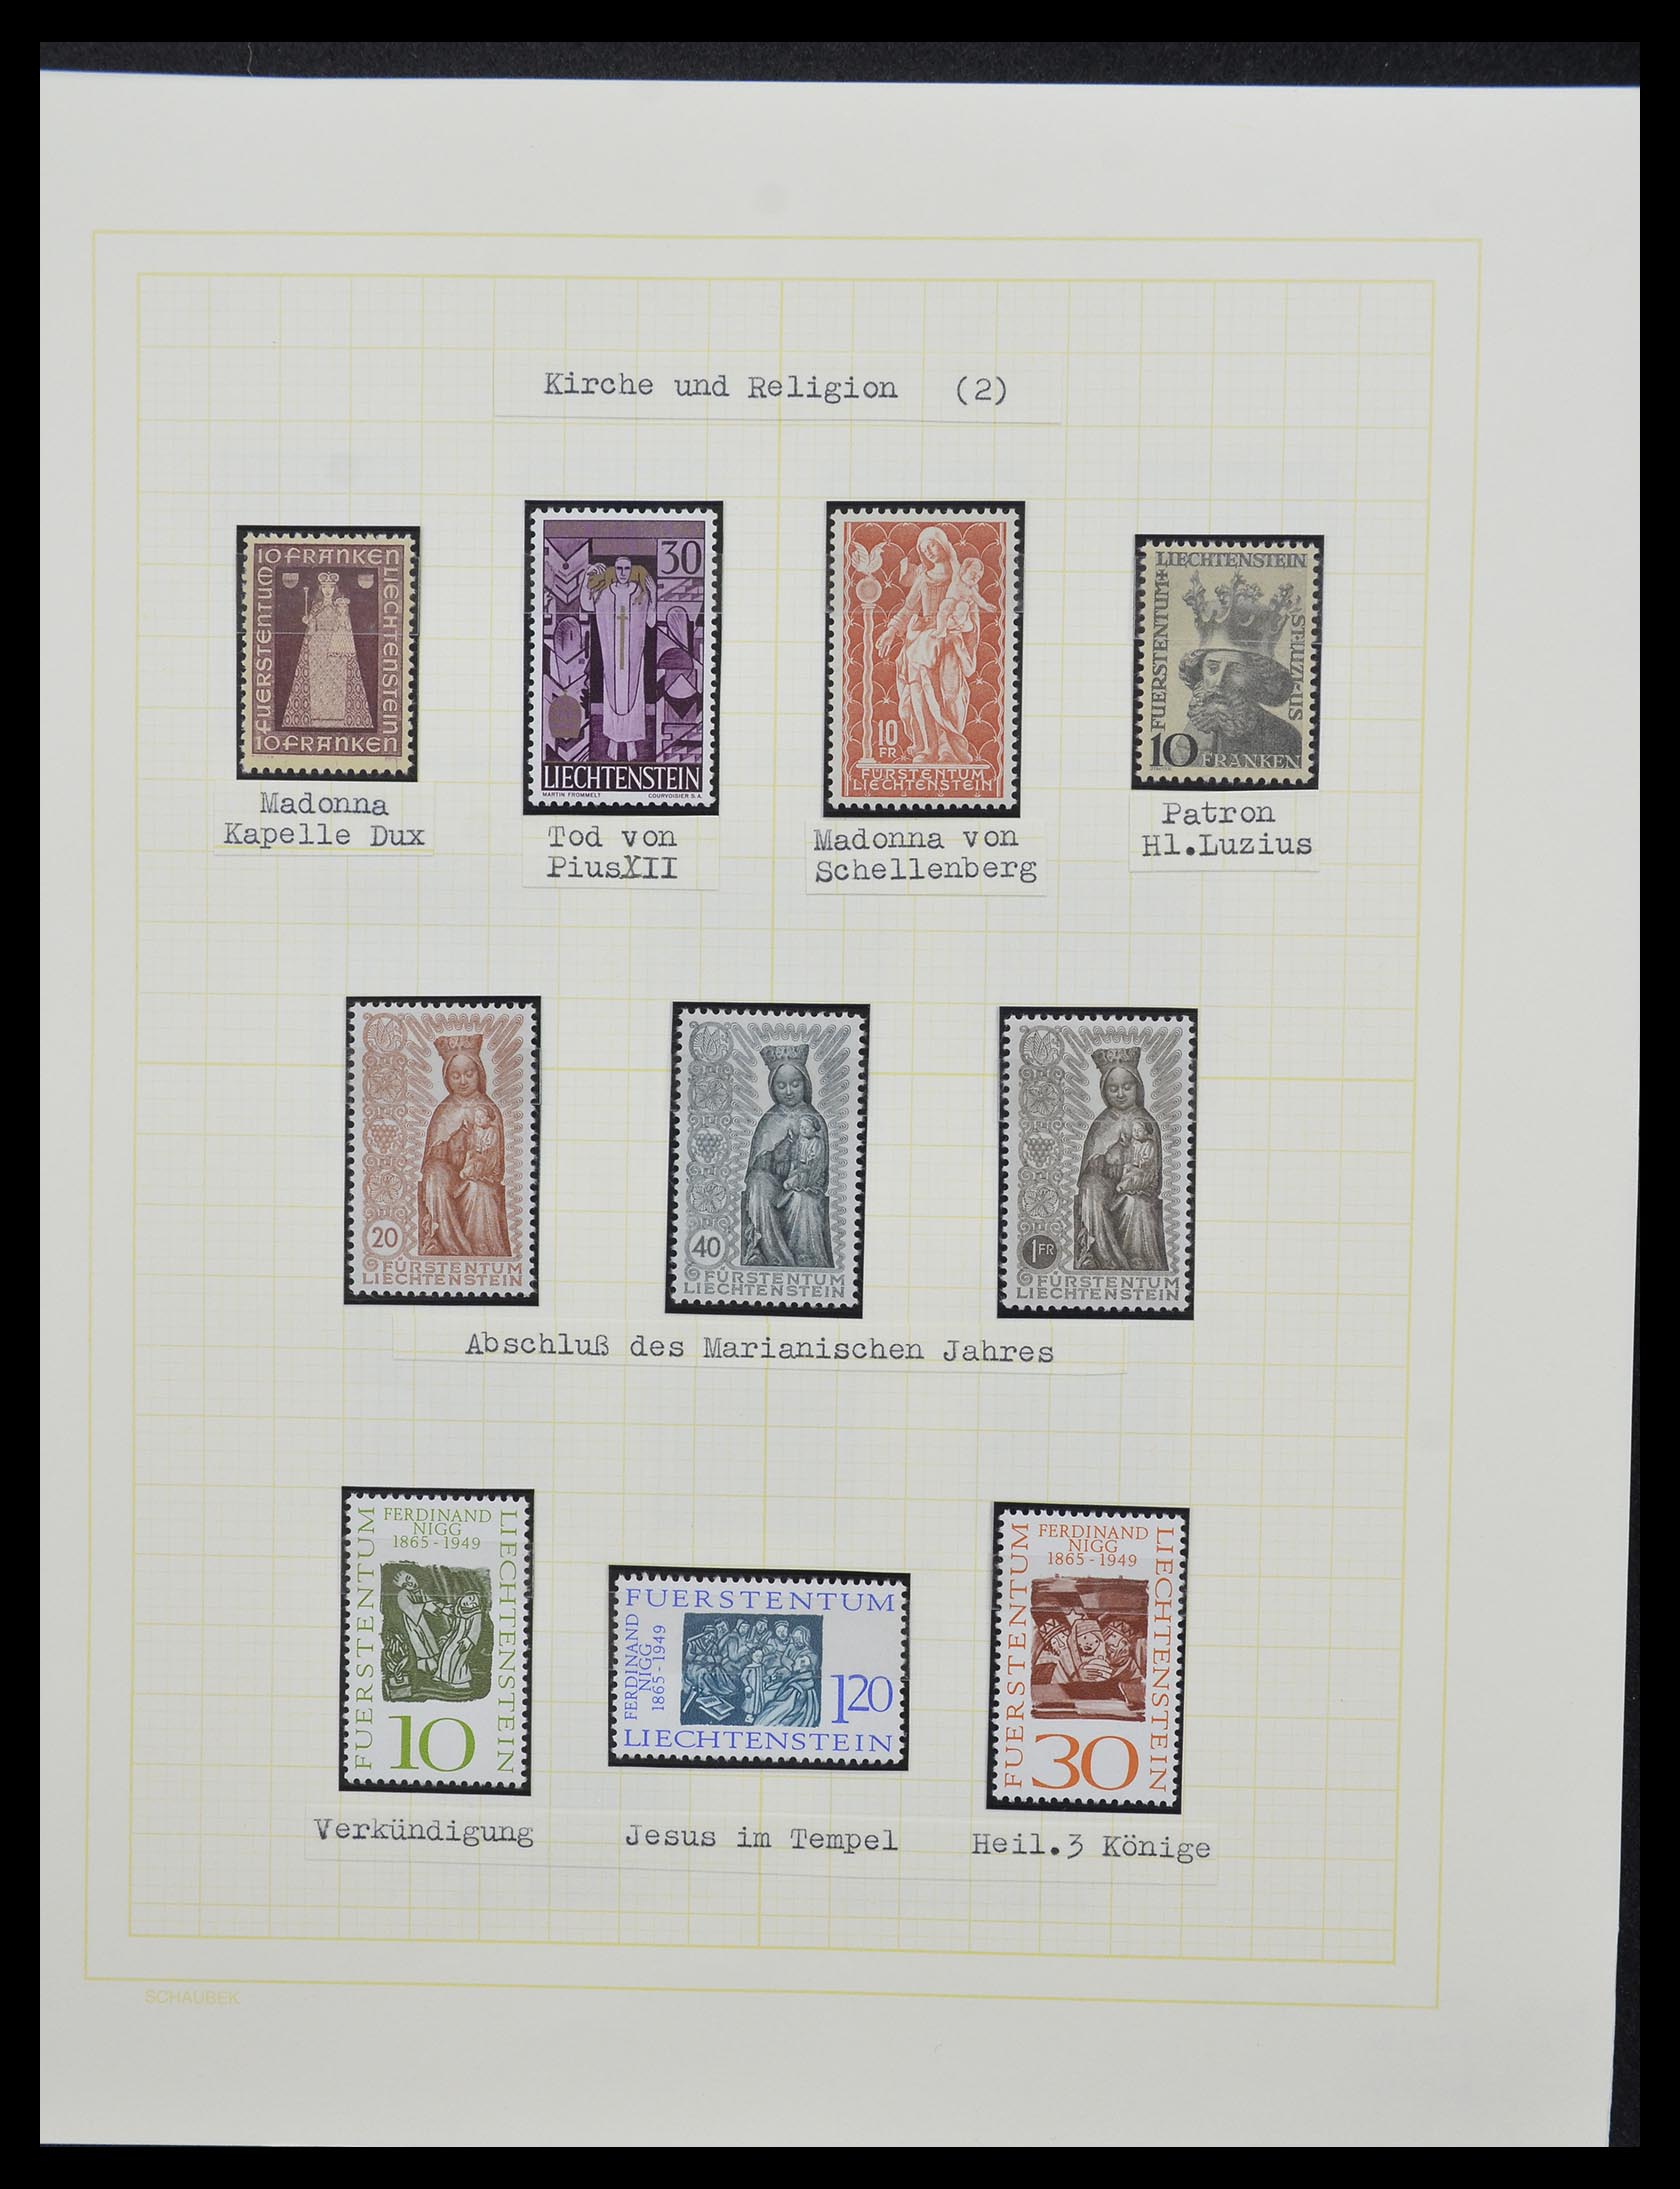 33138 104 - Stamp collection 33138 Liechtenstein 1912-2002.